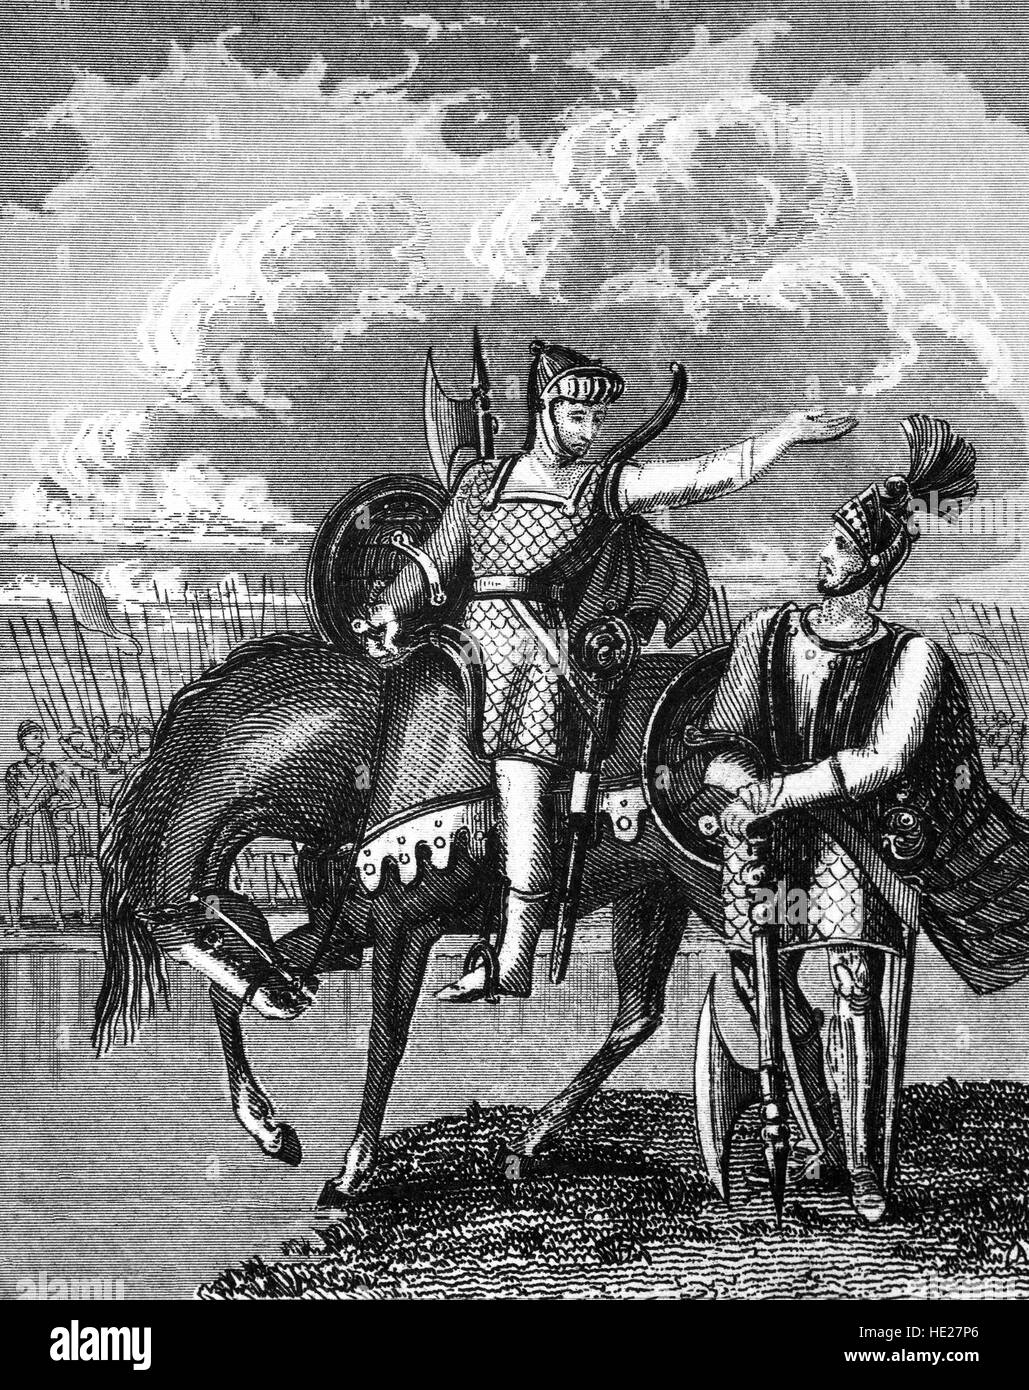 Robert the Bruce (1274 - 1329), qui ont pris les armes contre les deux Edward I et Édouard II d'Angleterre et qui uni les hautes terres et les basses terres dans une violente bataille pour la liberté avec le chevalier de plaine, Sir William Wallace (1272 - 1305). Sa victoire décisive sur l'armée d'Édouard II à Bannockburn en 1314 finalement gagné la liberté qu'il avait lutté pour. Bruce était roi d'Écosse à partir de 1306 - 1329. Banque D'Images